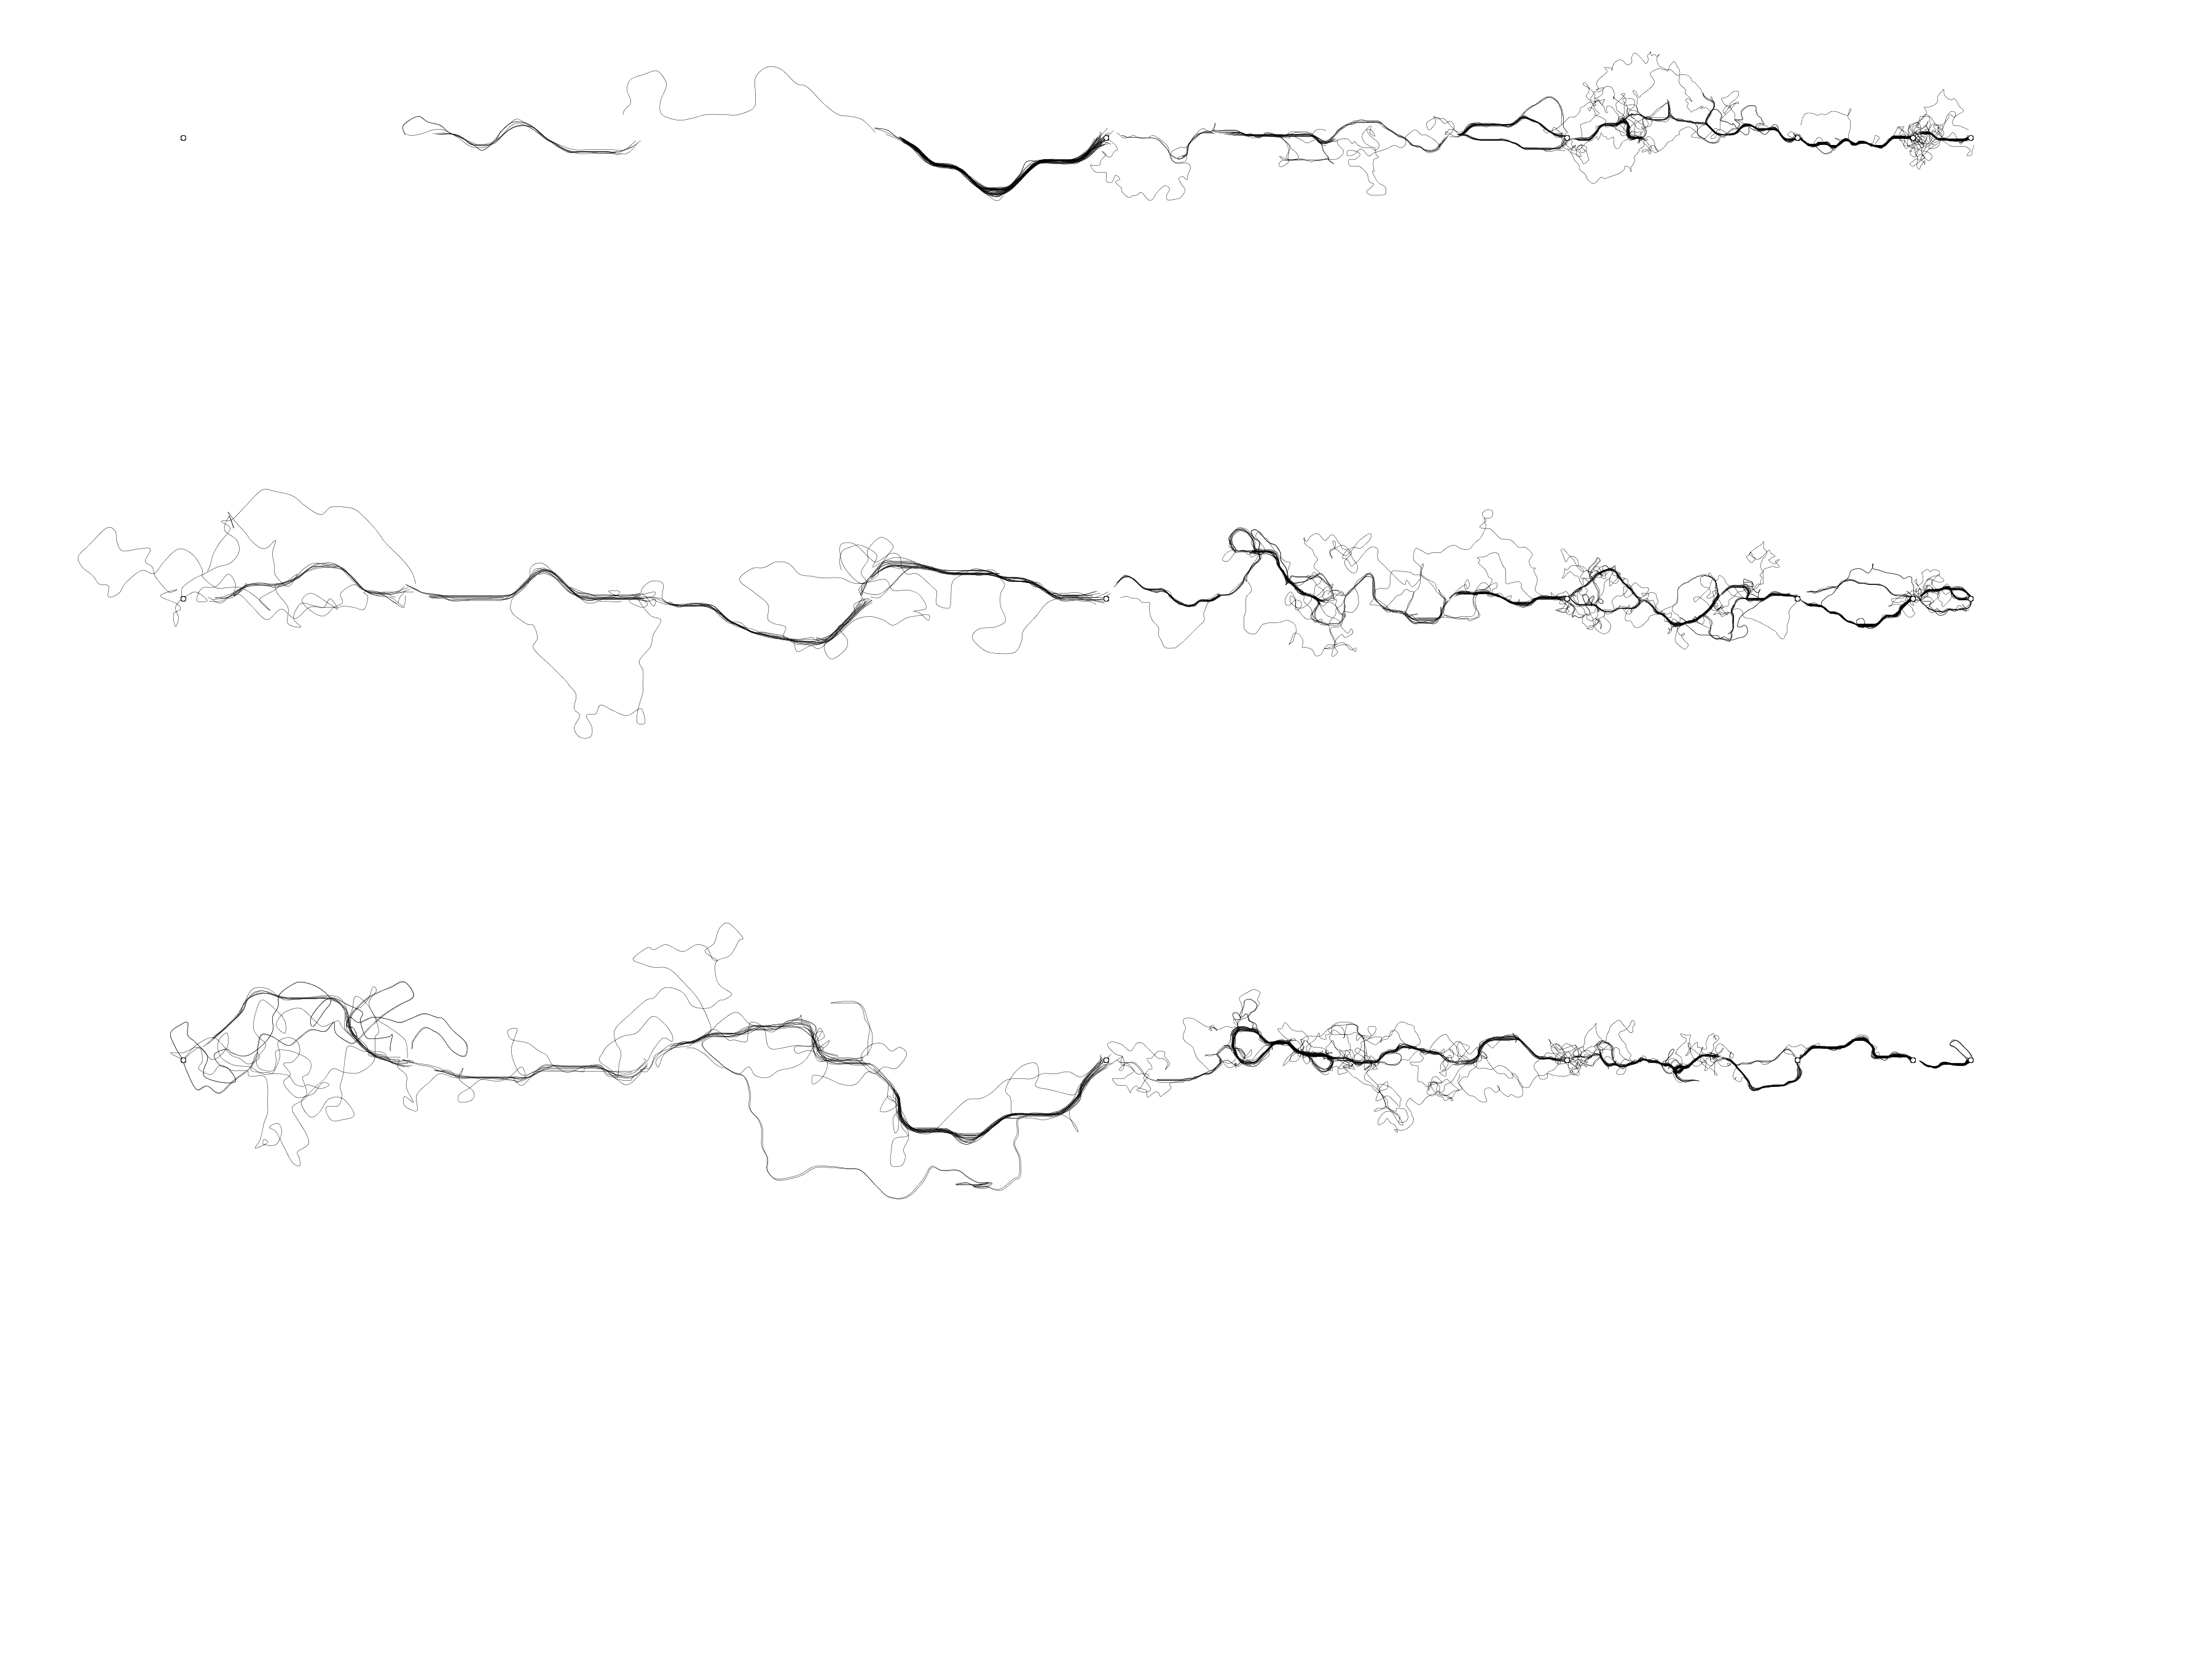 Рисуем муравьями: процедурные изображения при помощи алгоритмов оптимизации муравьиной колонии - 9